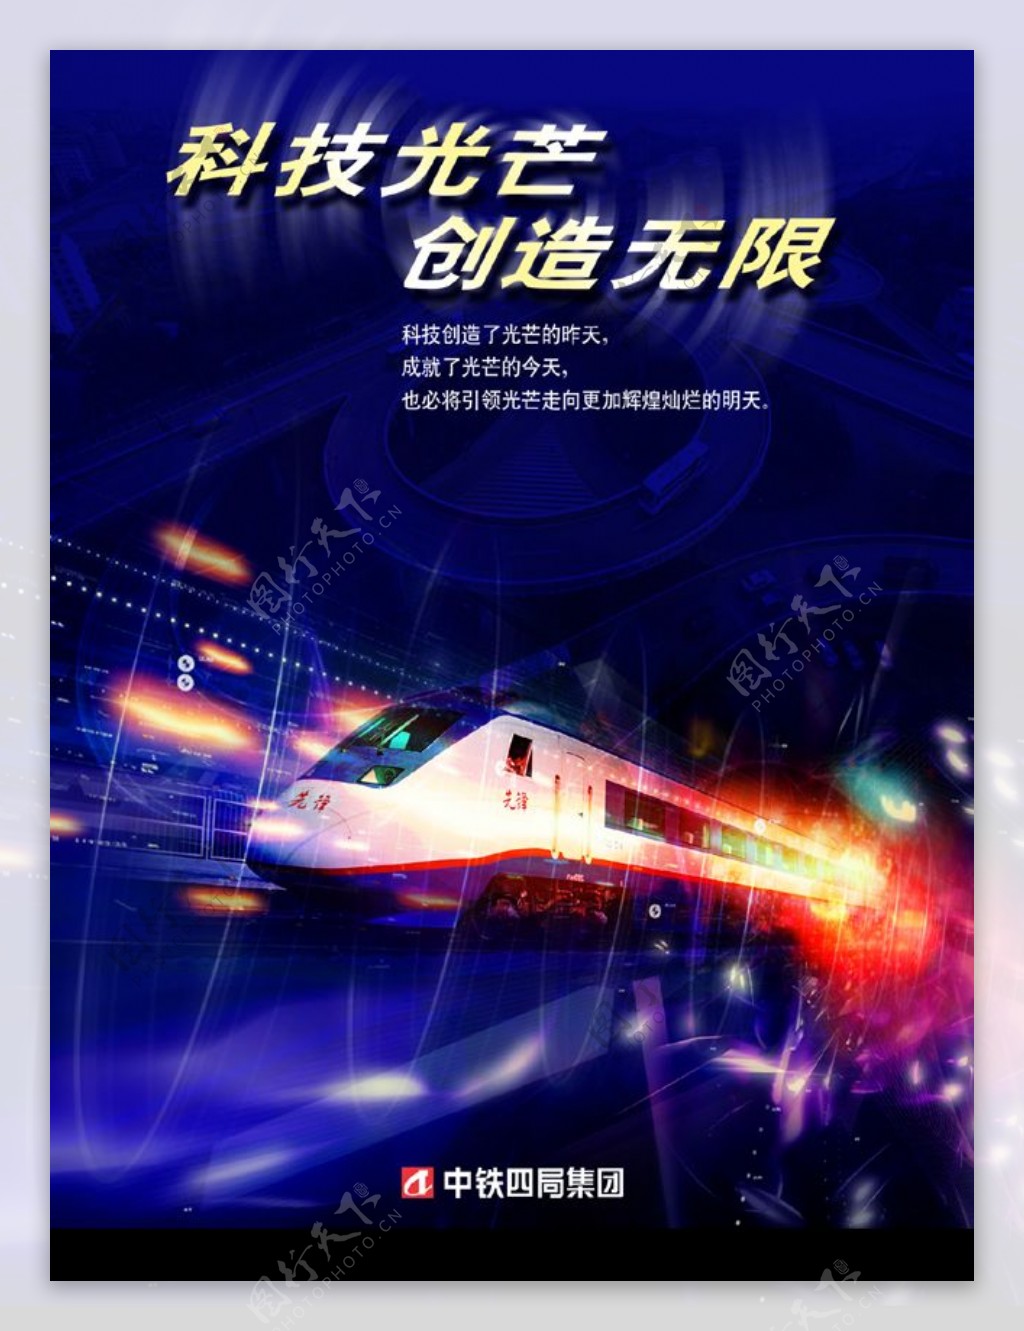 中国中铁常用企业文化画科技兴企宣传画图片